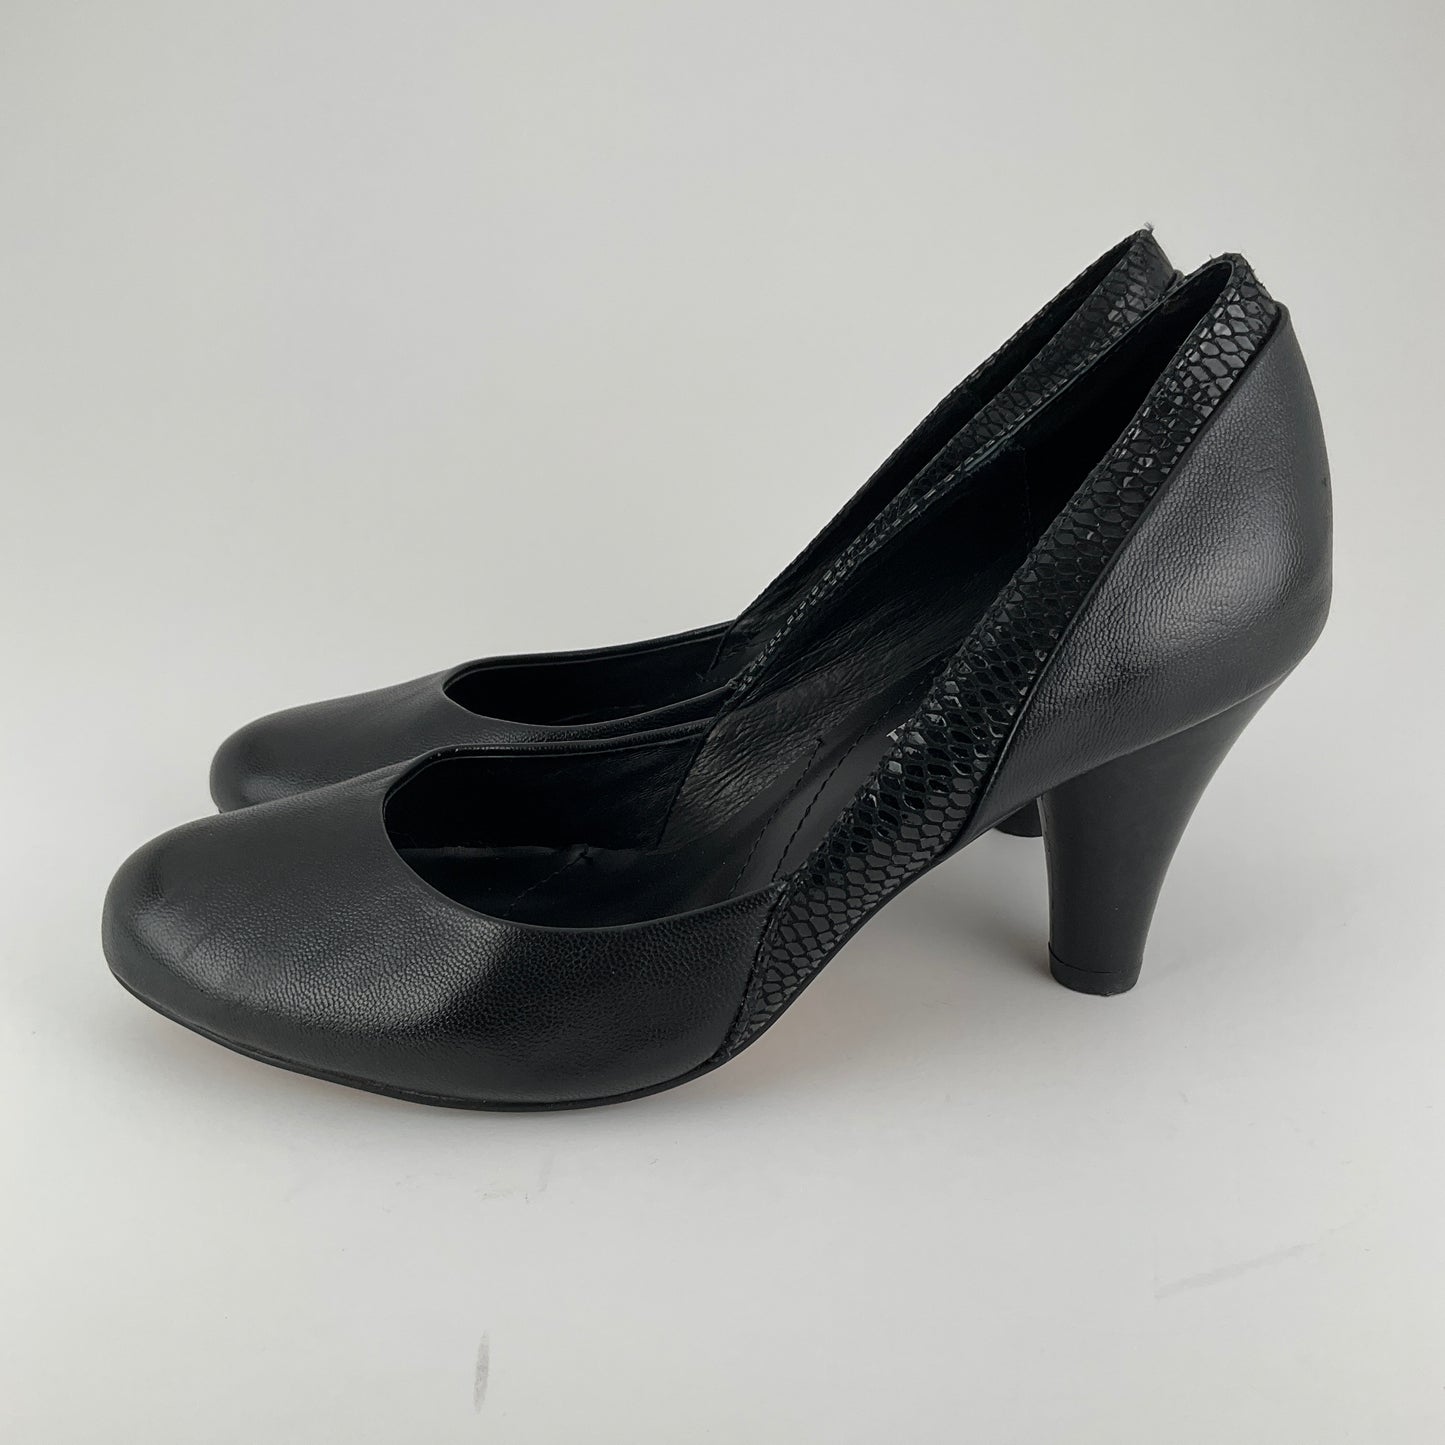 Isabella Anselmi - Black Heels - Size 36